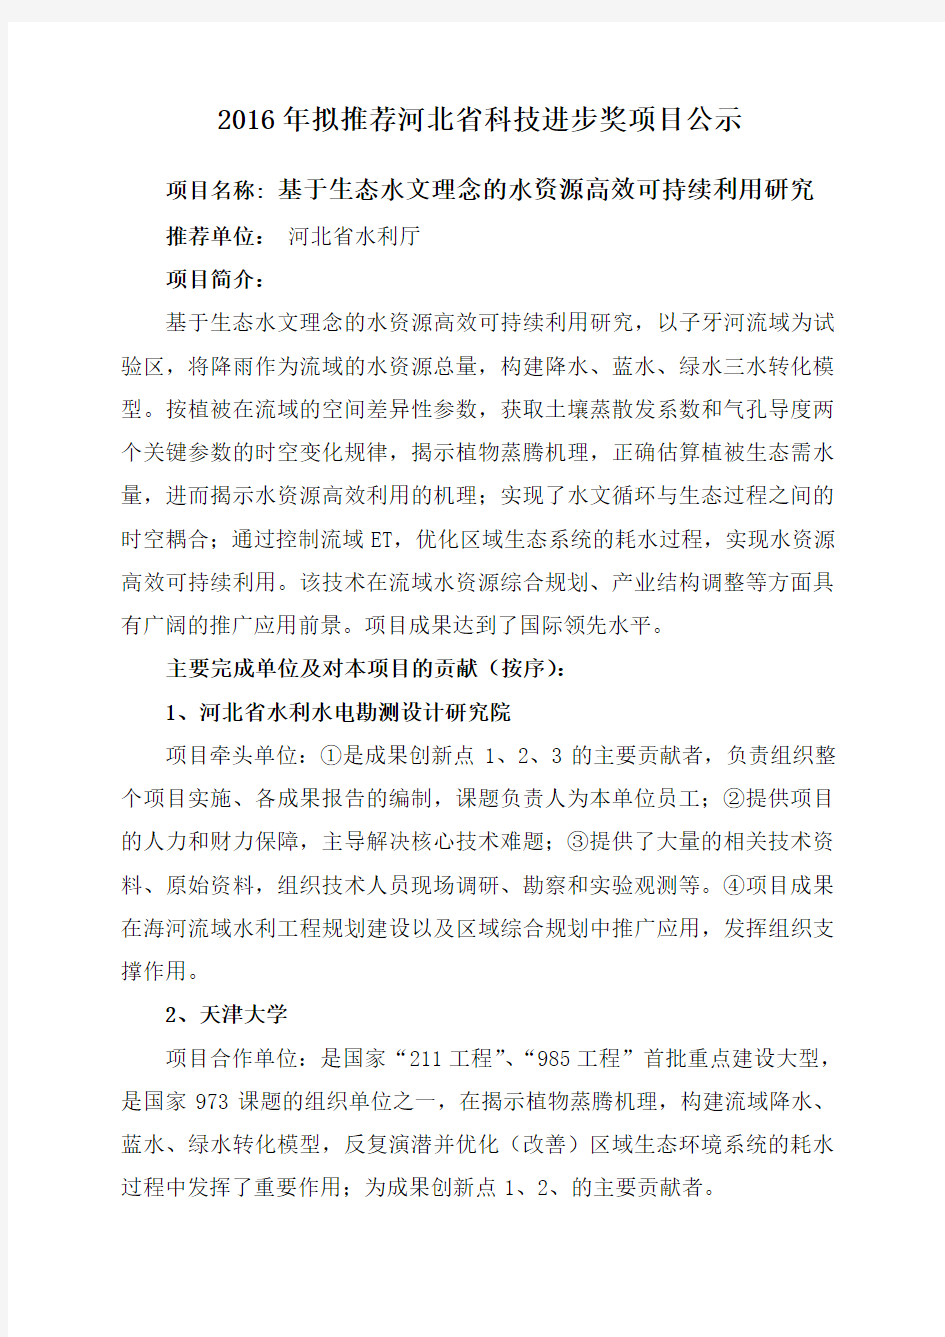 2016年推荐河北省科技进步奖项目公示